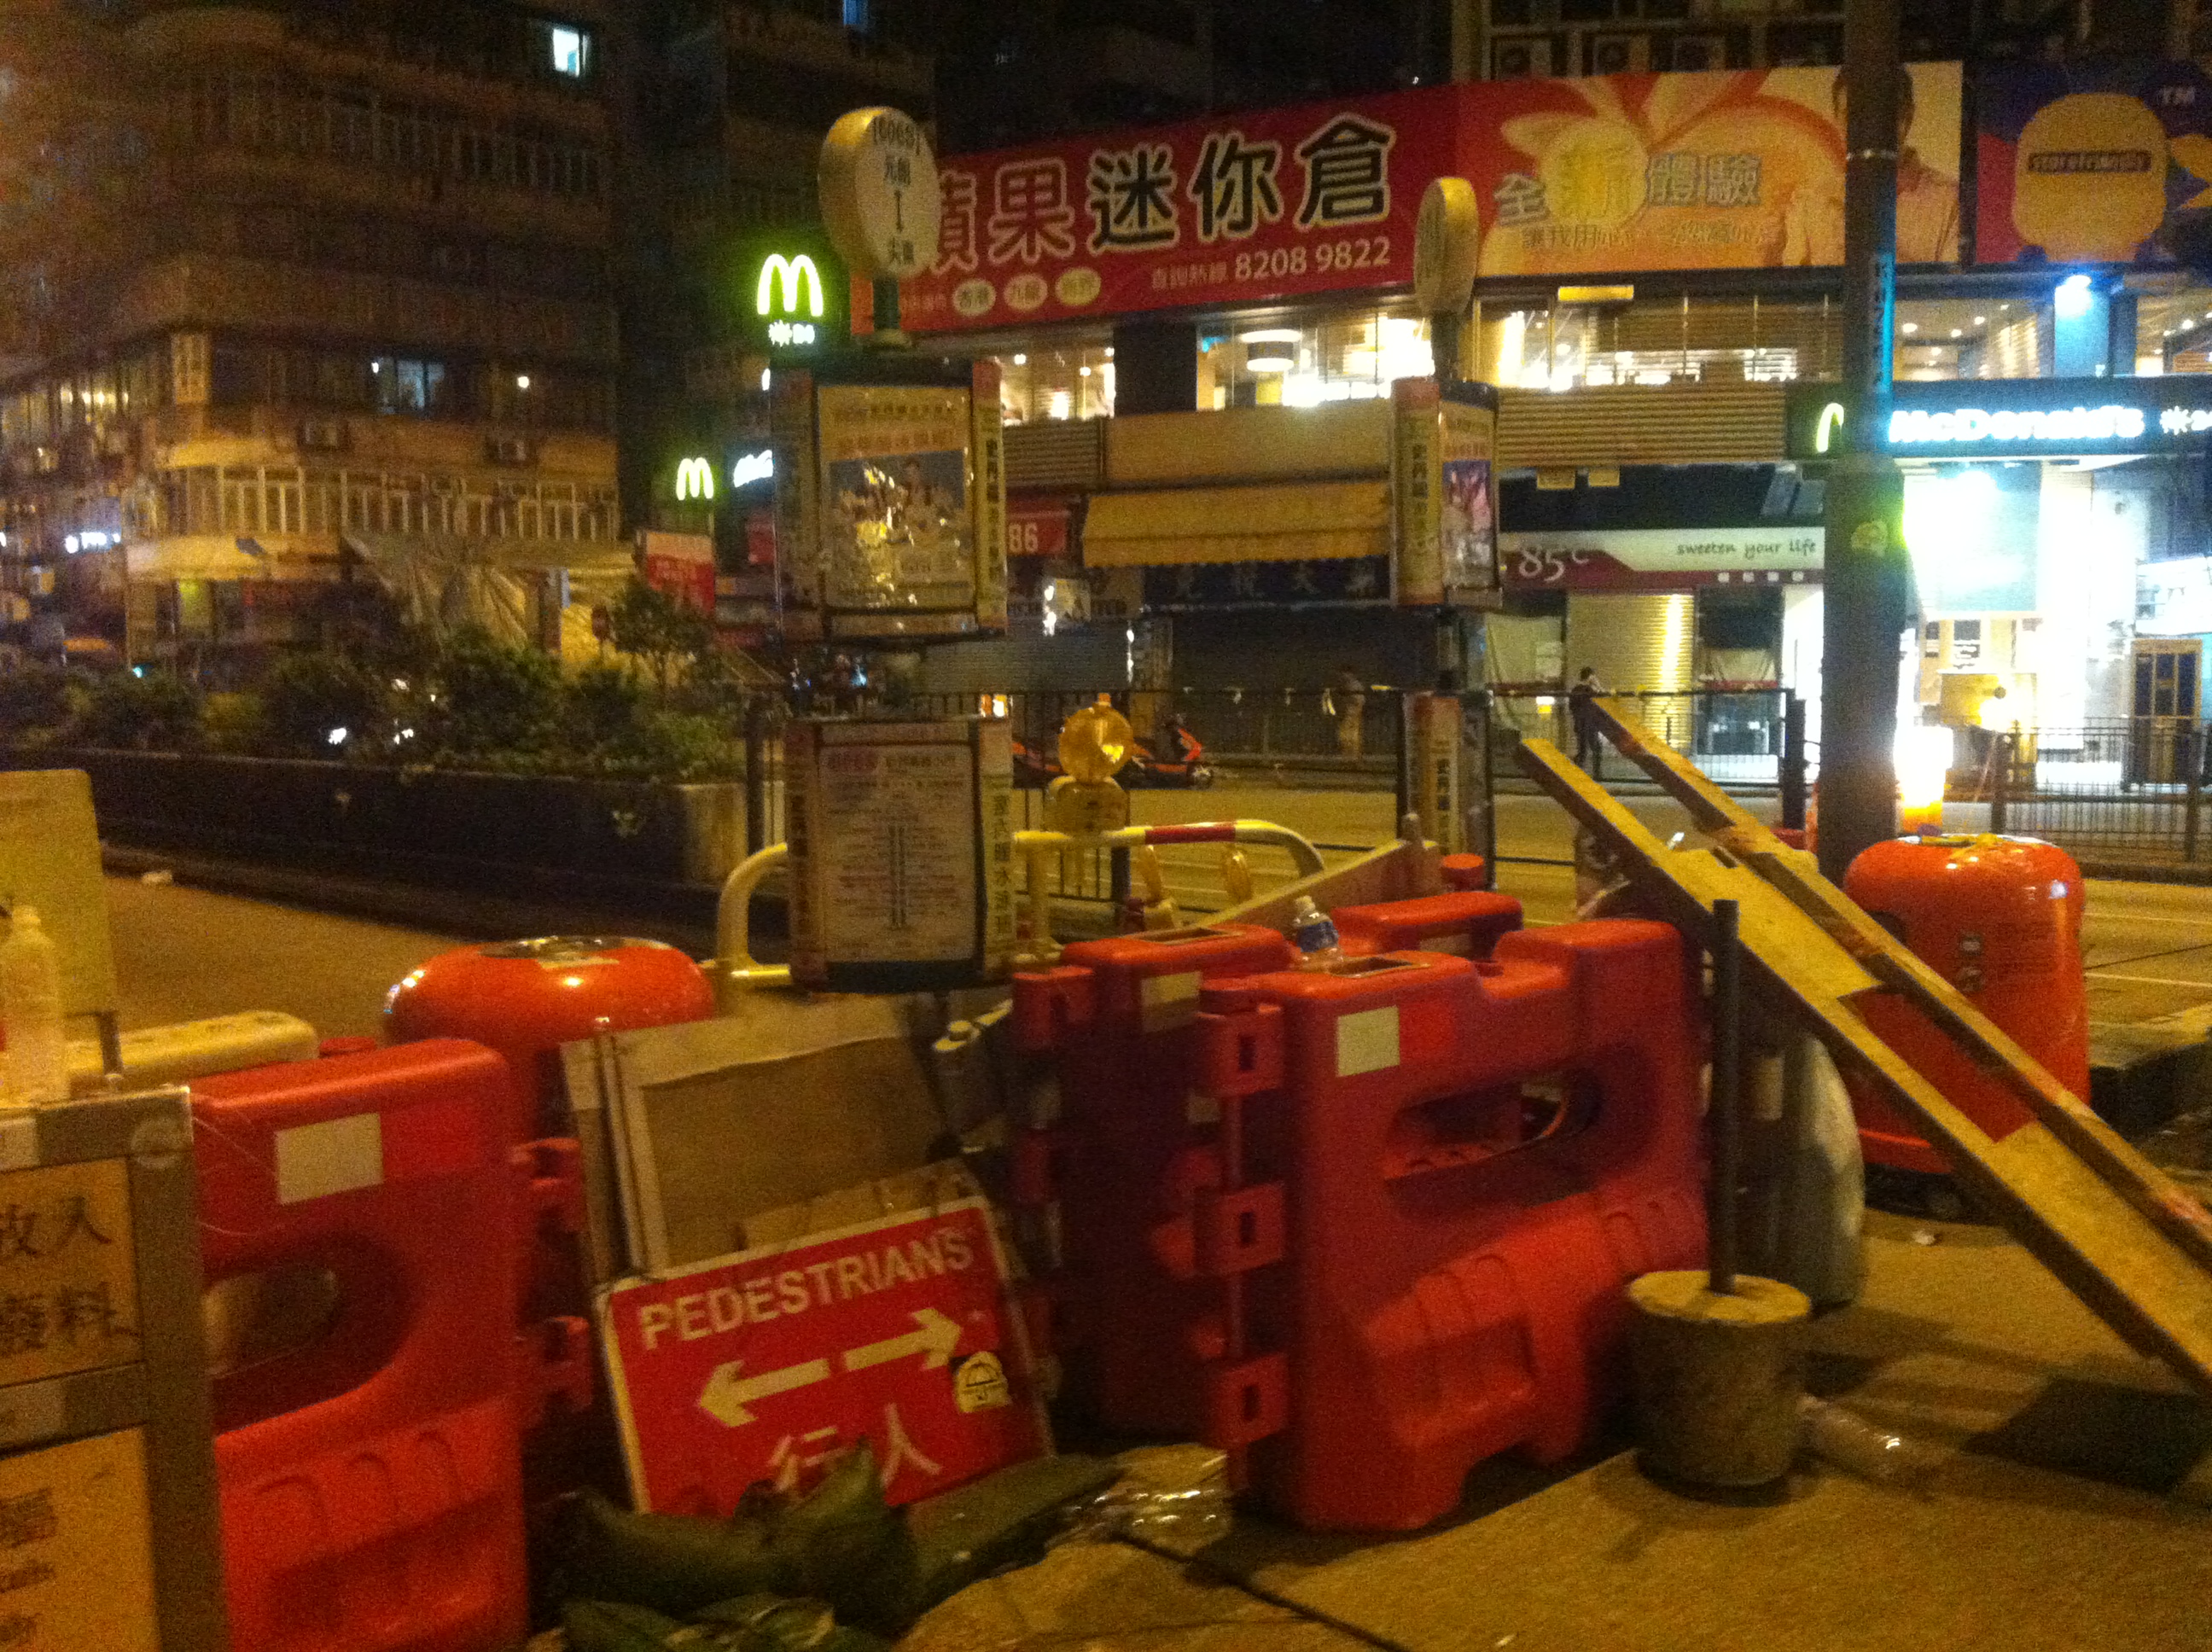 A barricade in Mong Kok.